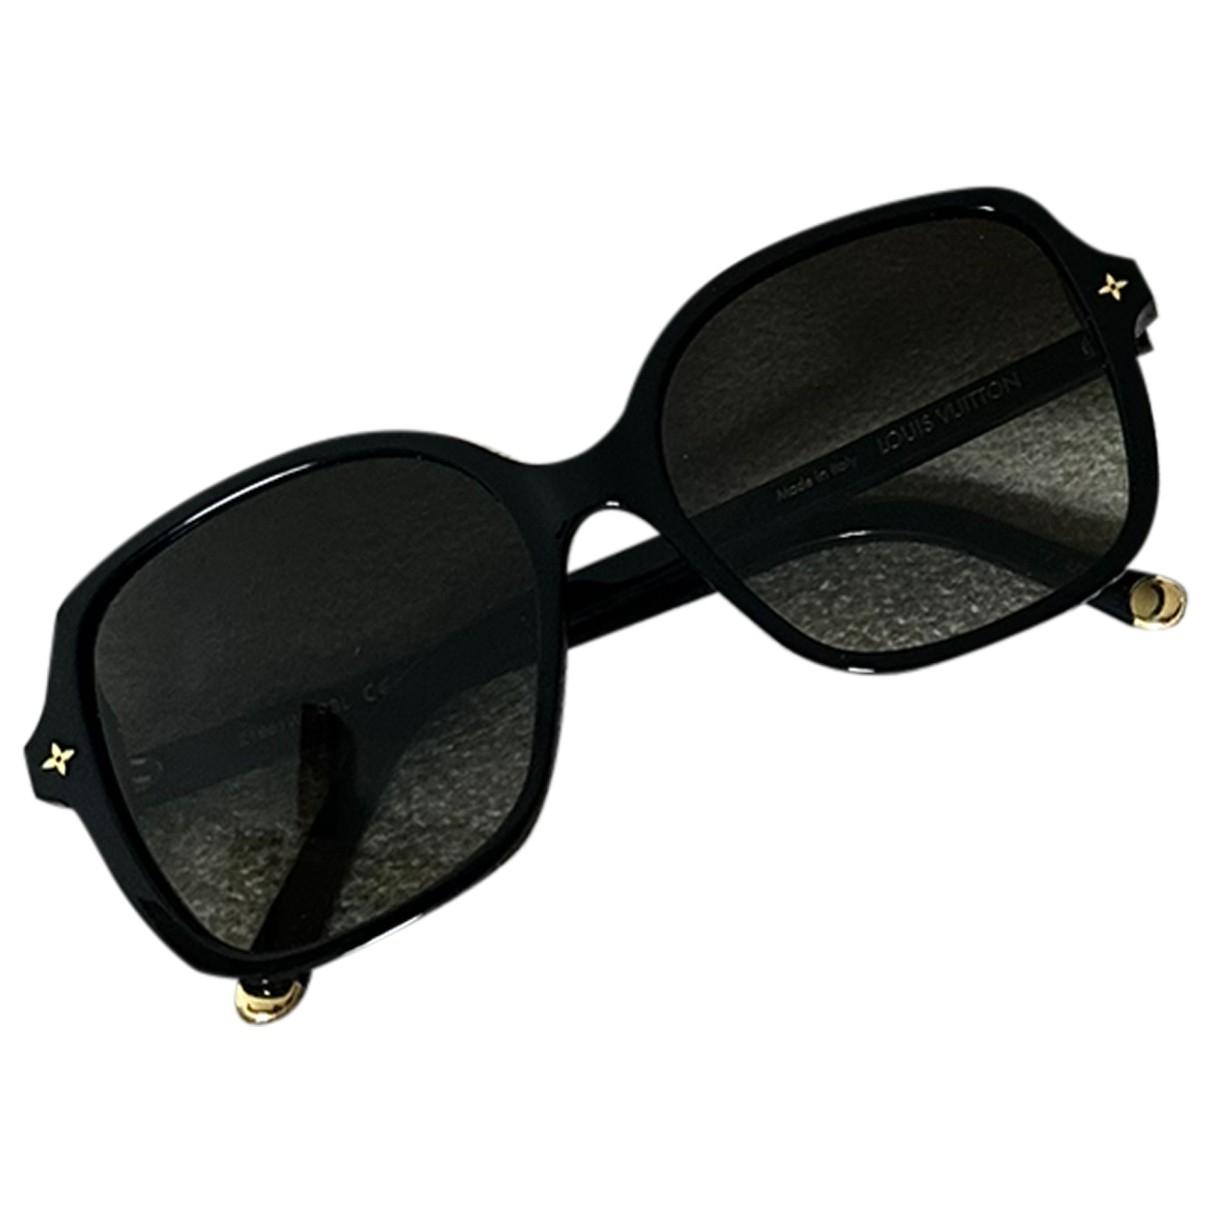 Lunettes Louis Vuitton pour Femme  Achat / Vente de lunettes de soleil de  marque - Vestiaire Collective